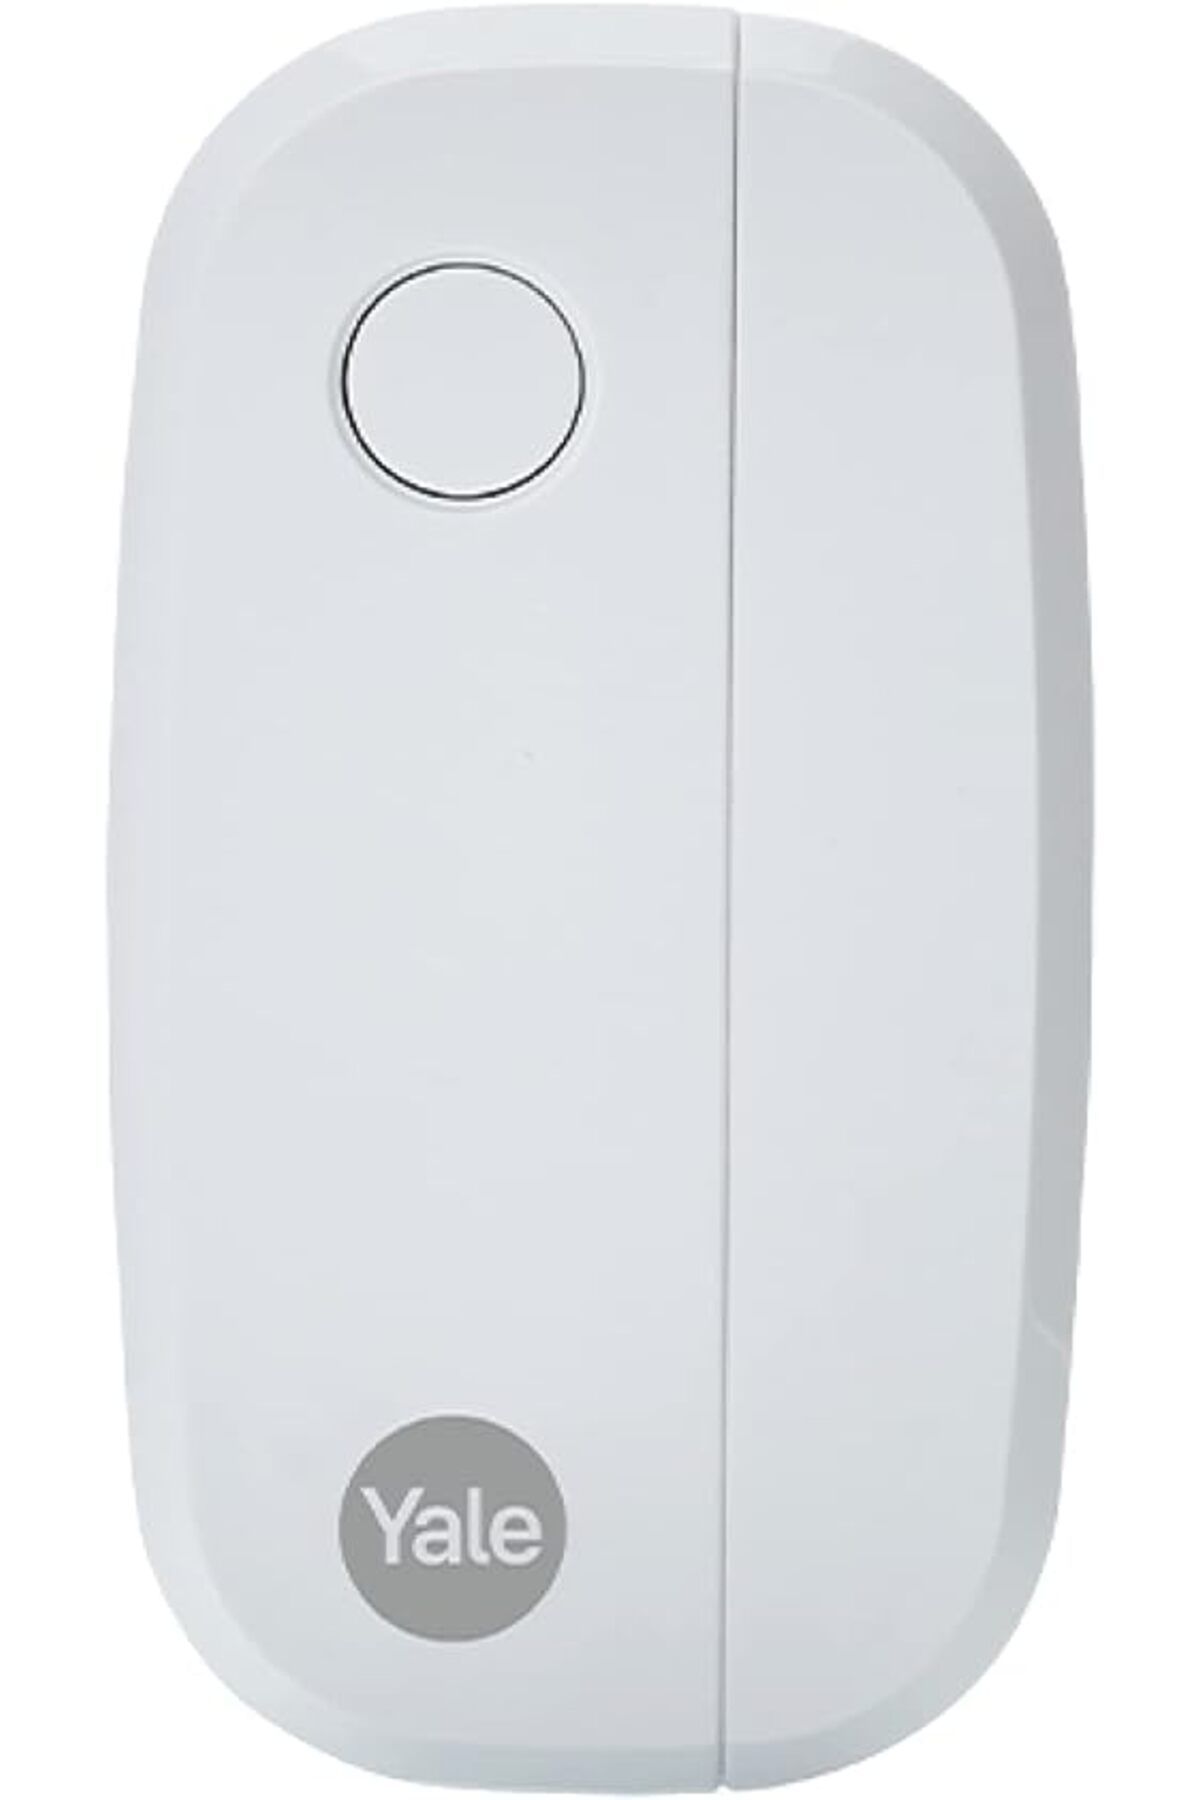 Yale AC-DC Sync Alarm Kapı/Pencere Kontağı - Sync Akıllı Ev Alarmı ile Çalışır - Yale Home Uygulama